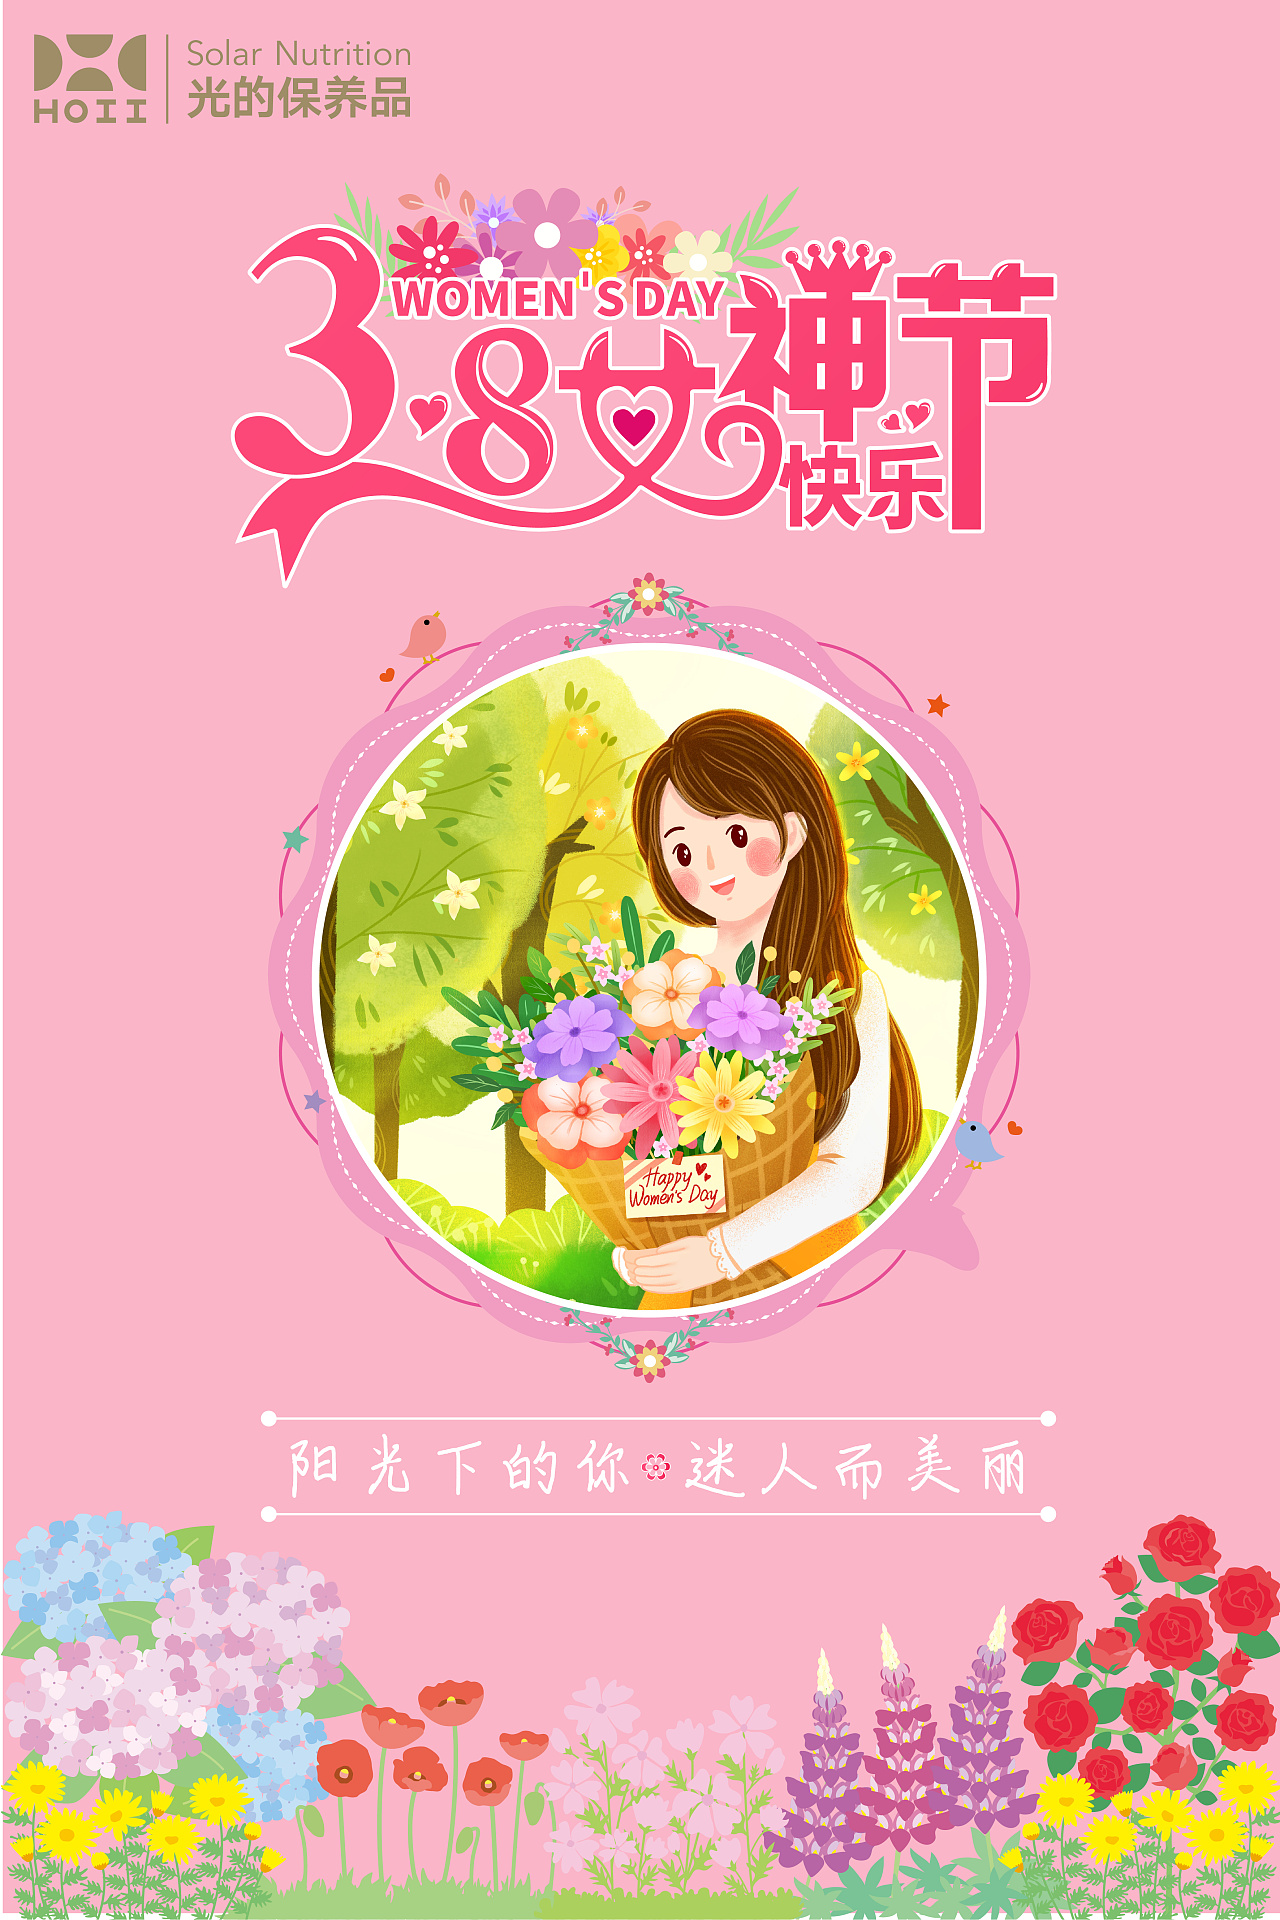 粉黄色线性女神手绘妇女节分享中文贺卡 - 模板 - Canva可画